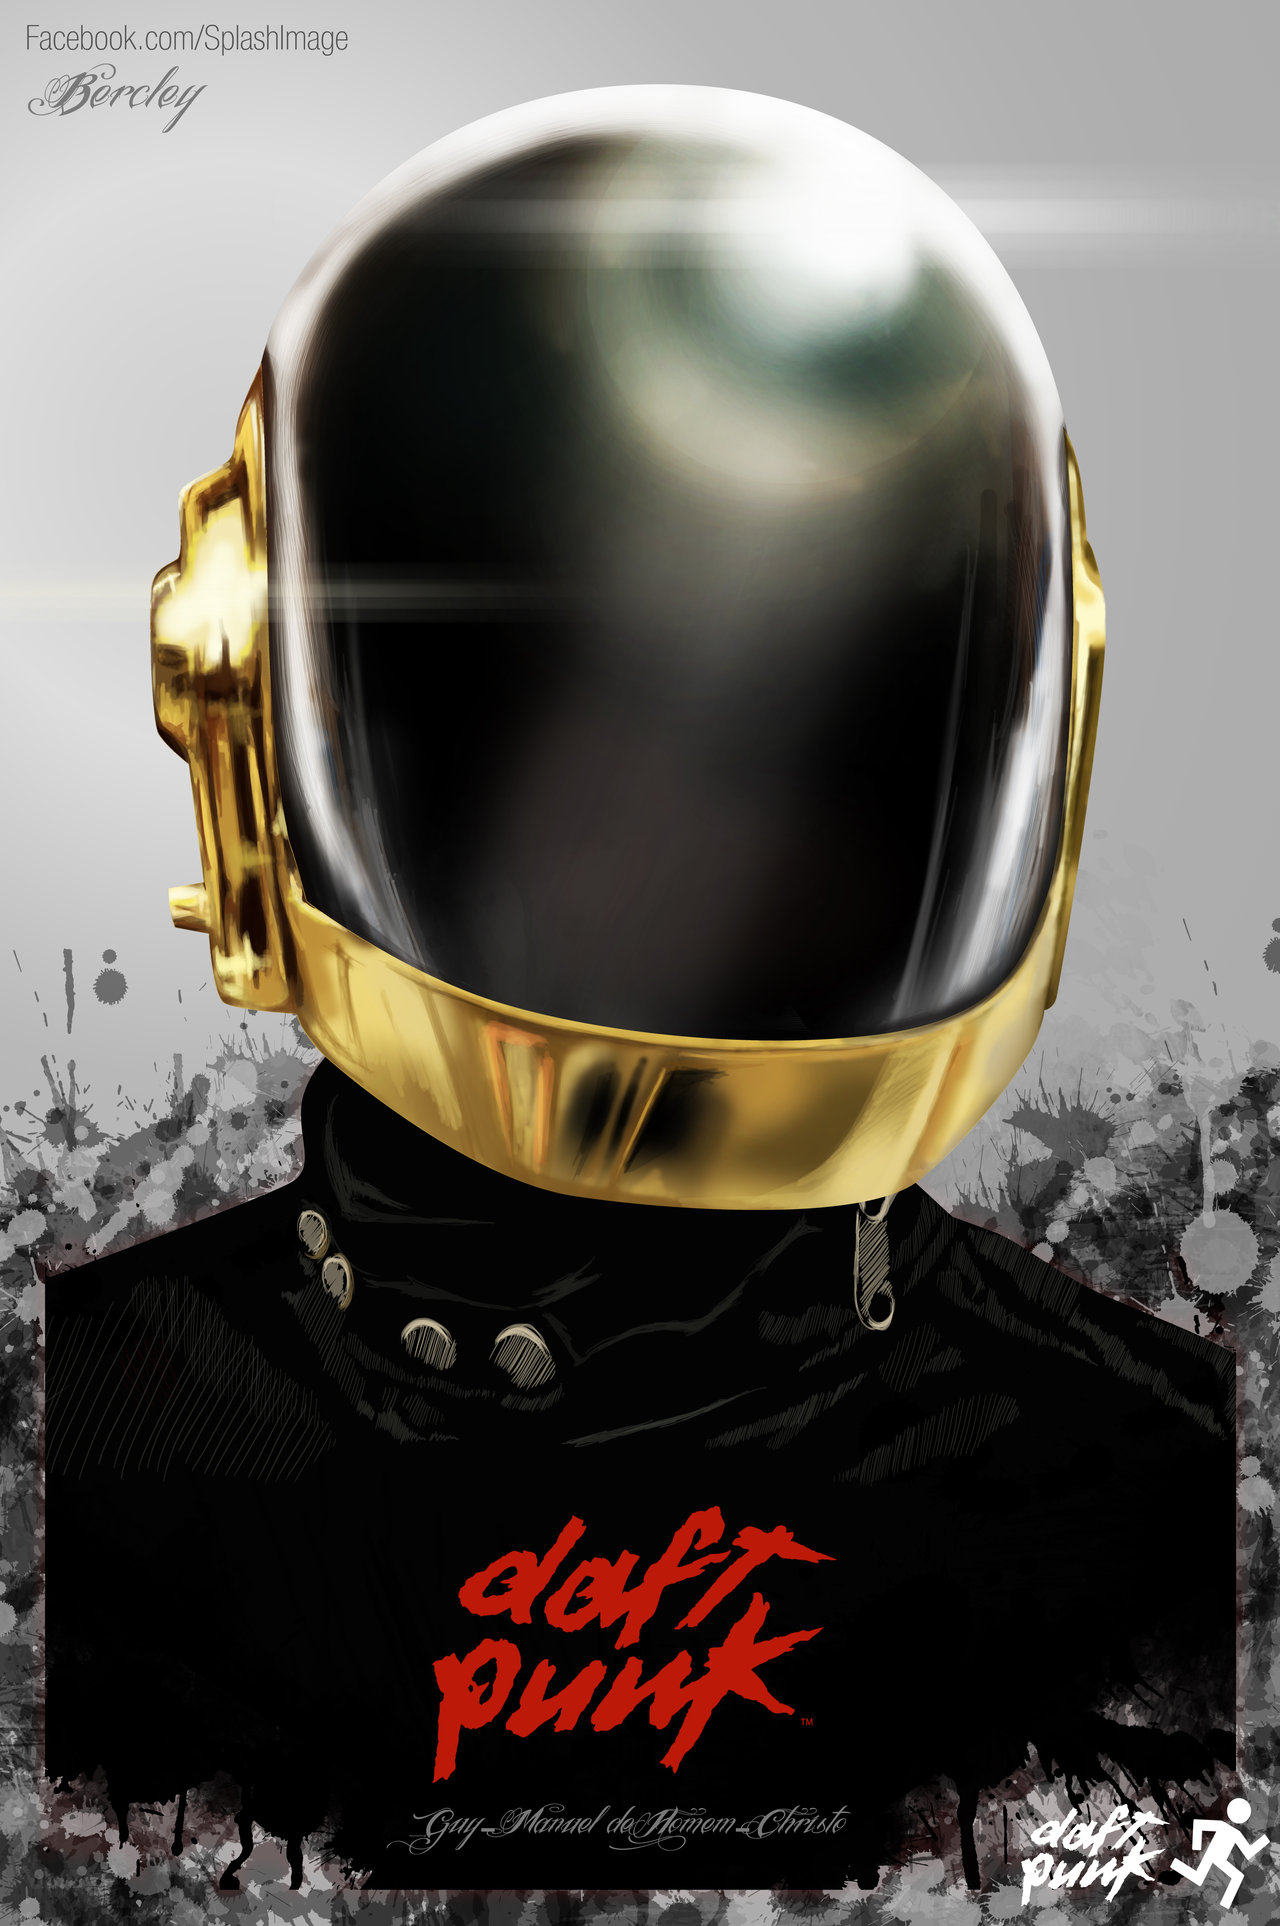 Semi-Daft Punk by BERCLEY